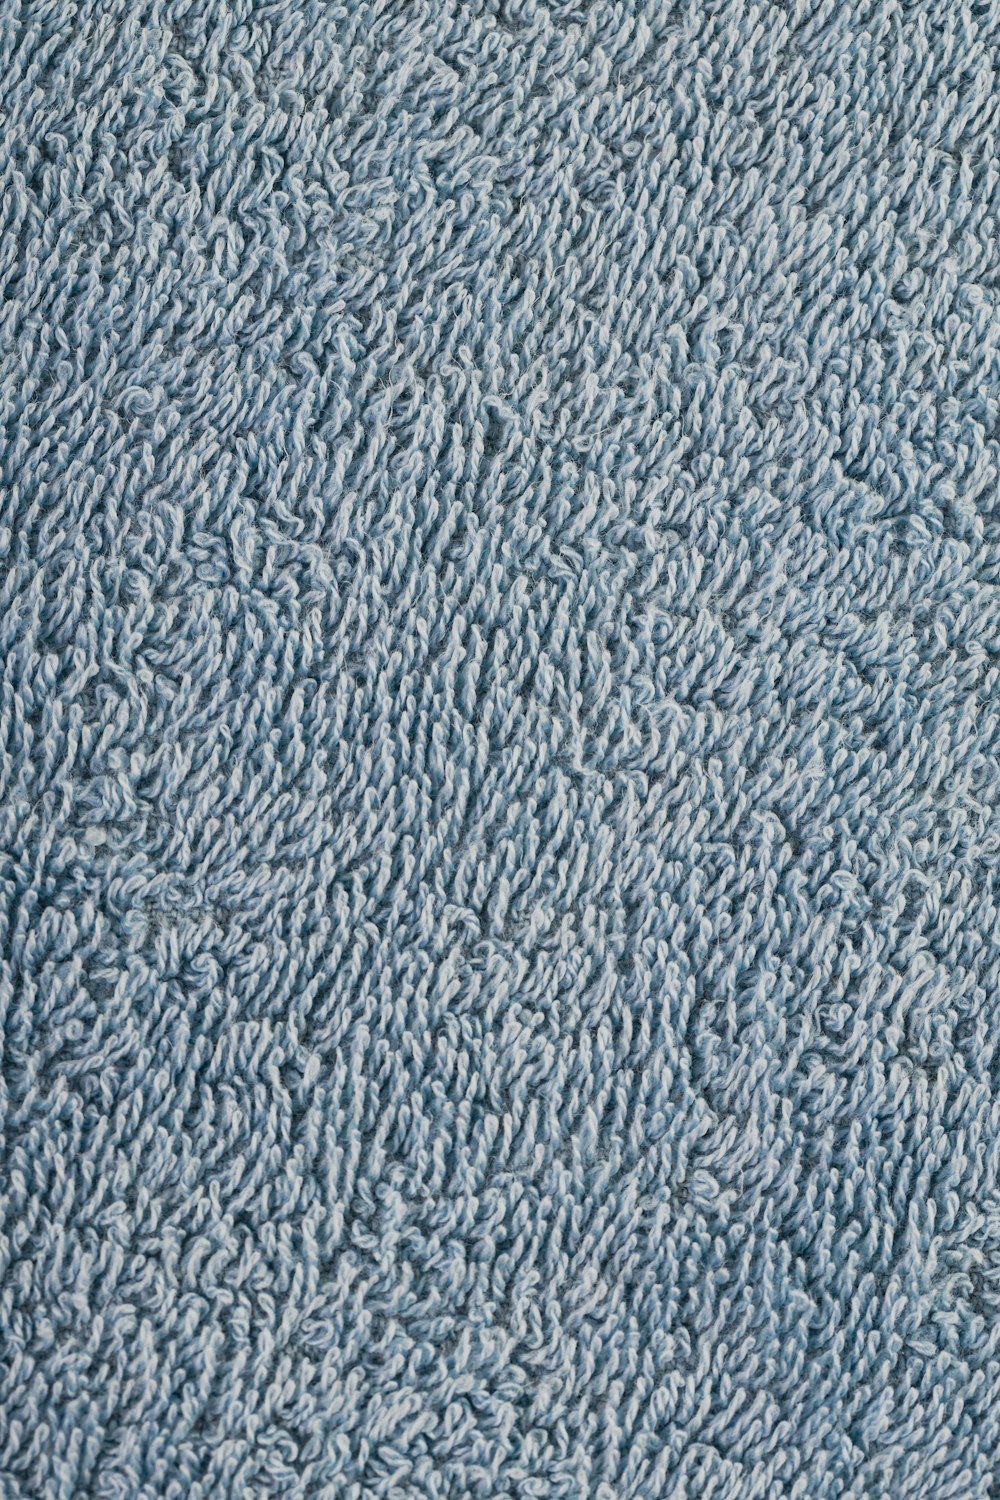 um close up de uma textura de tapete azul